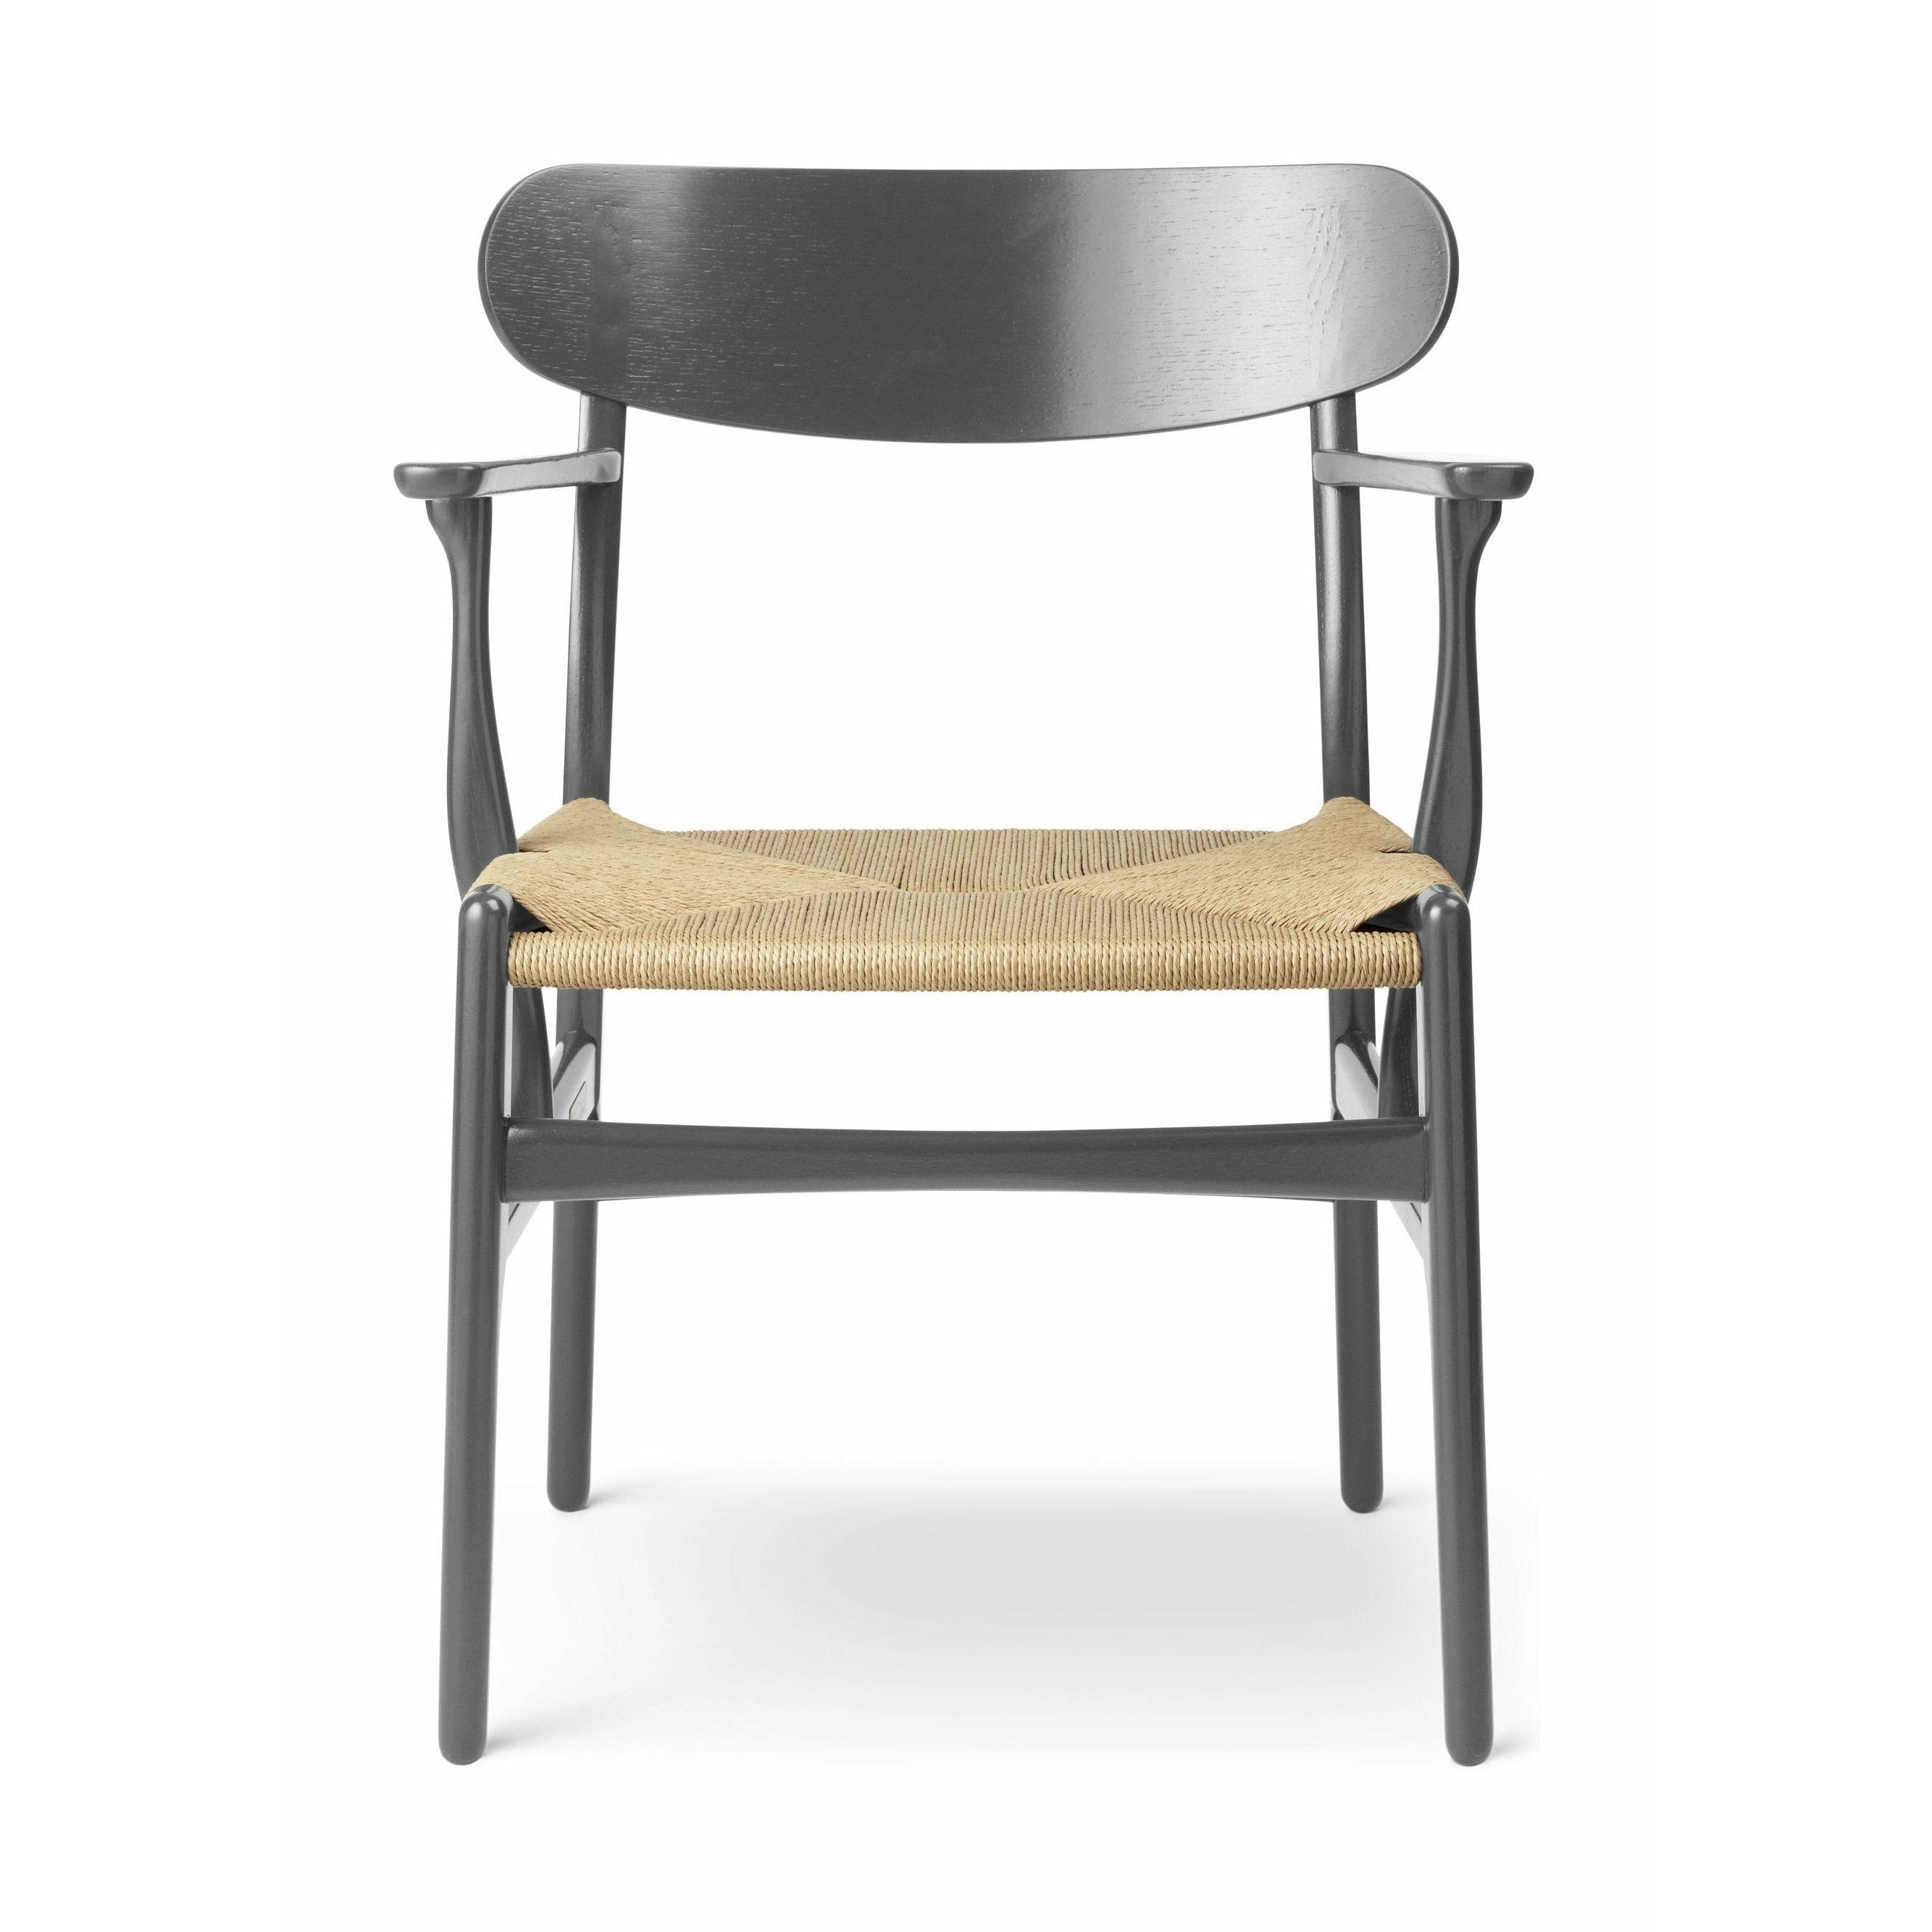 Carl Hansen CH26椅子橡木，板岩棕色/天然柳条